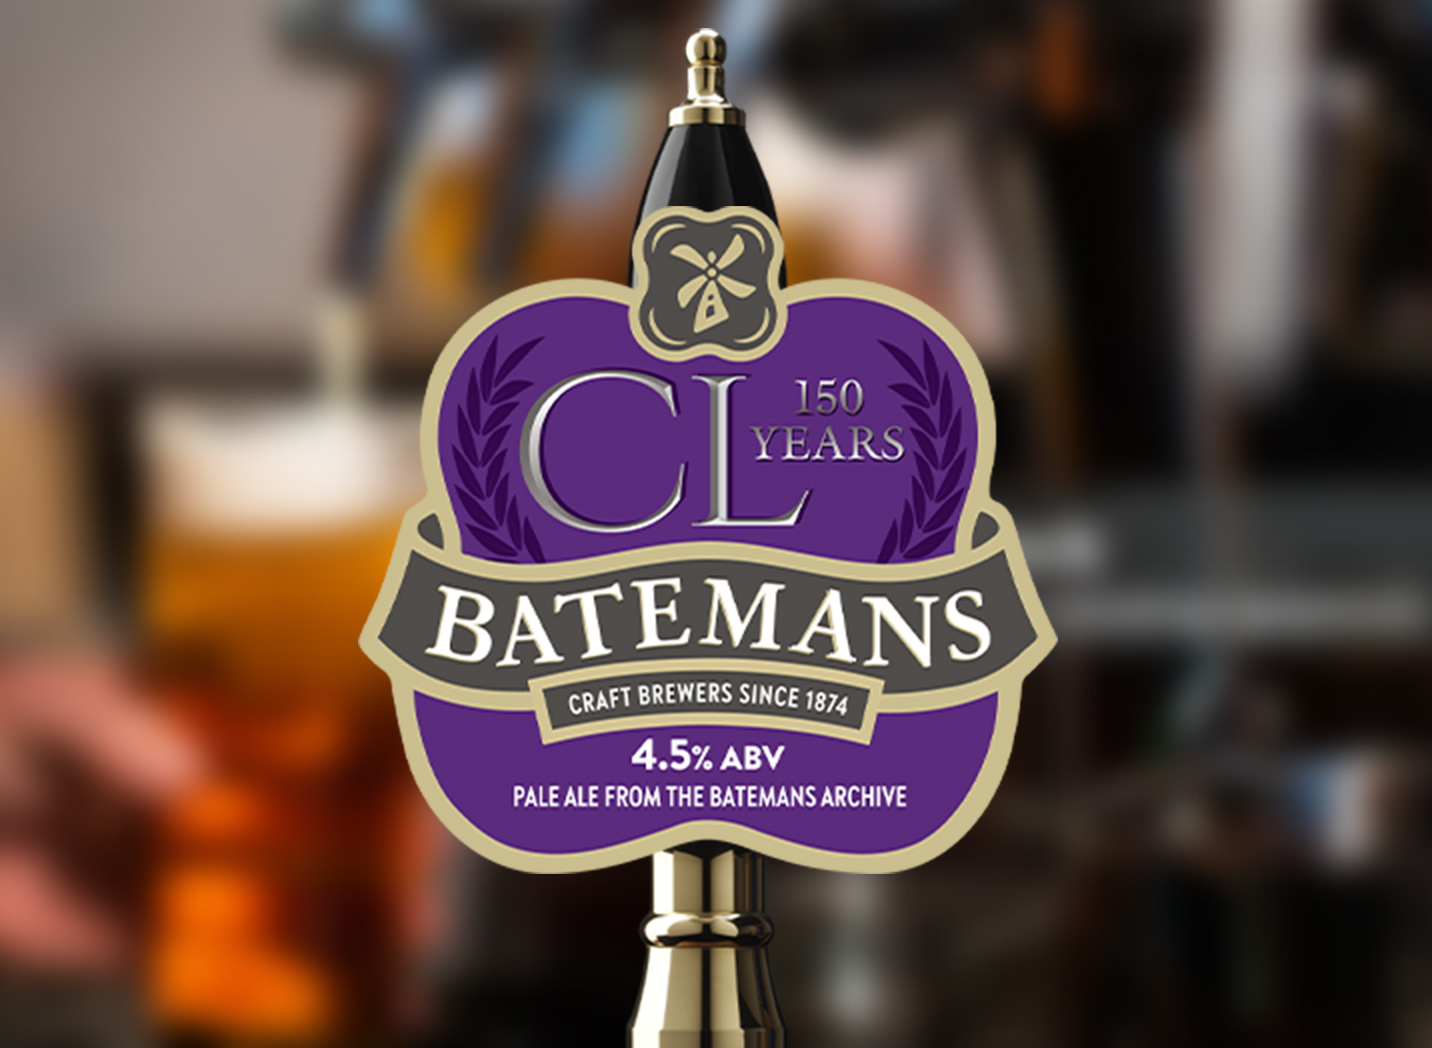 CL Batemans Beer